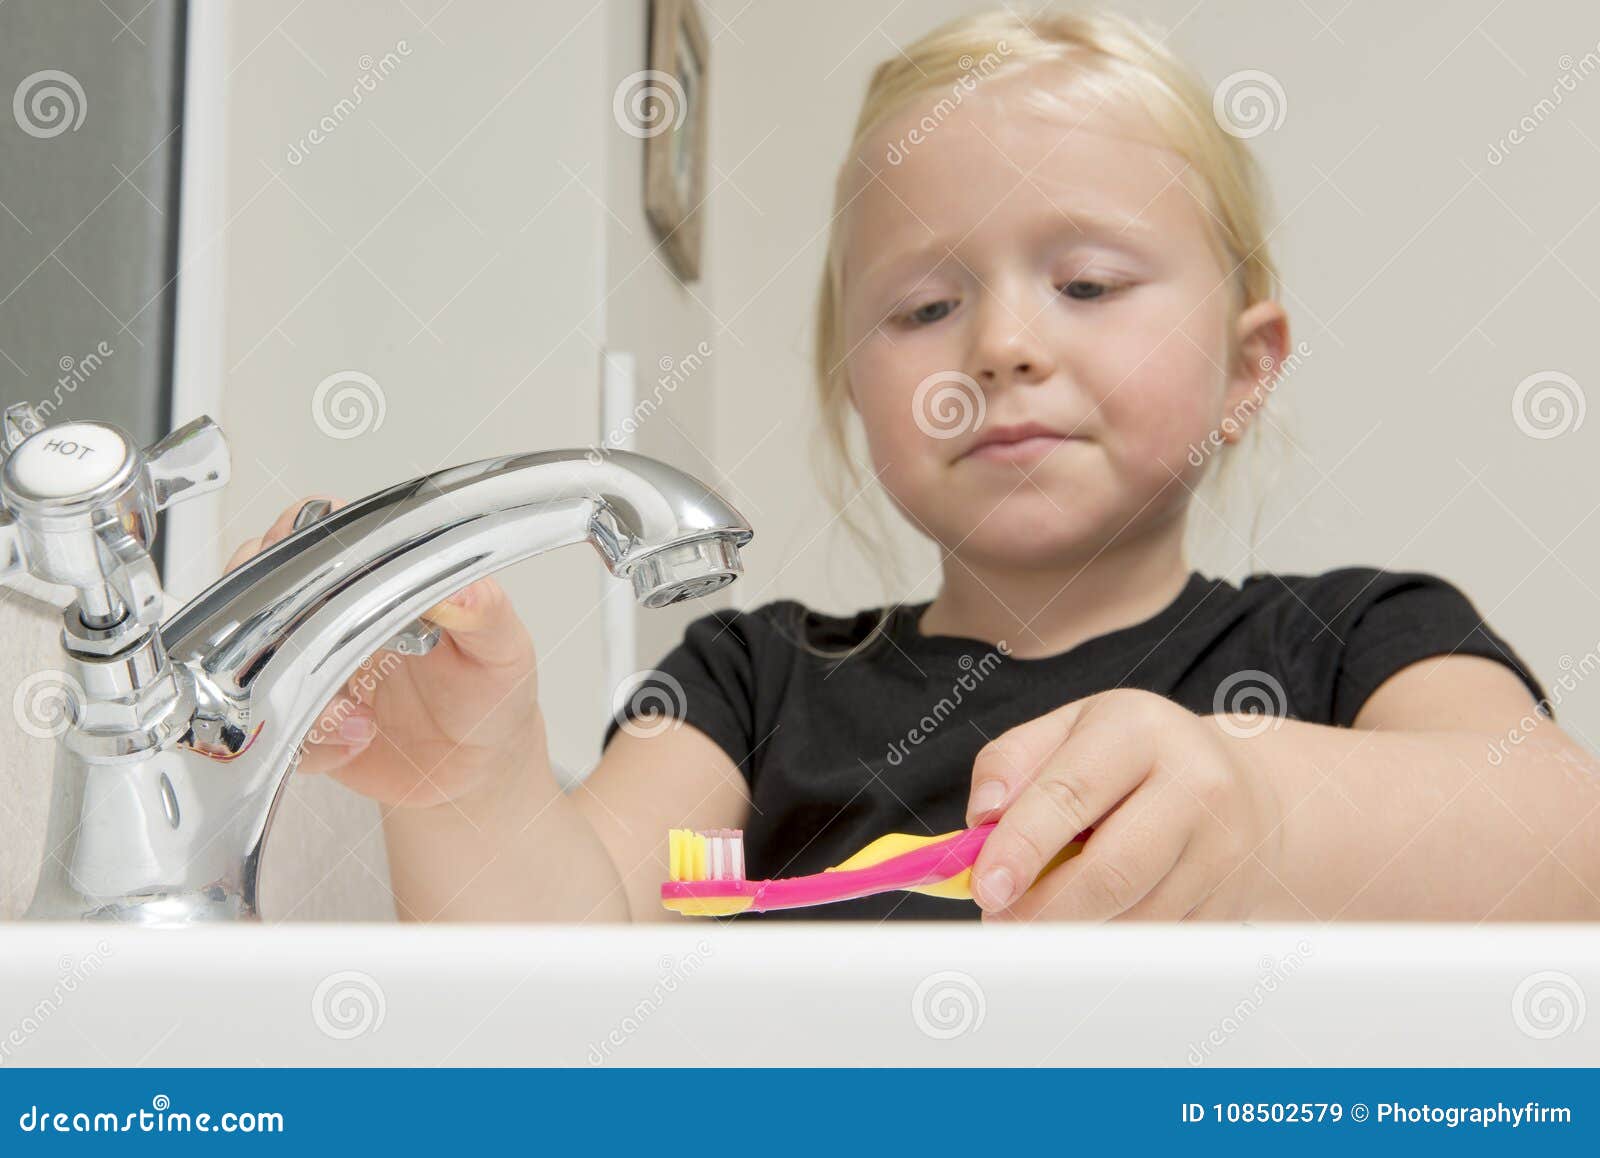 girl washing bat in bathroom sink